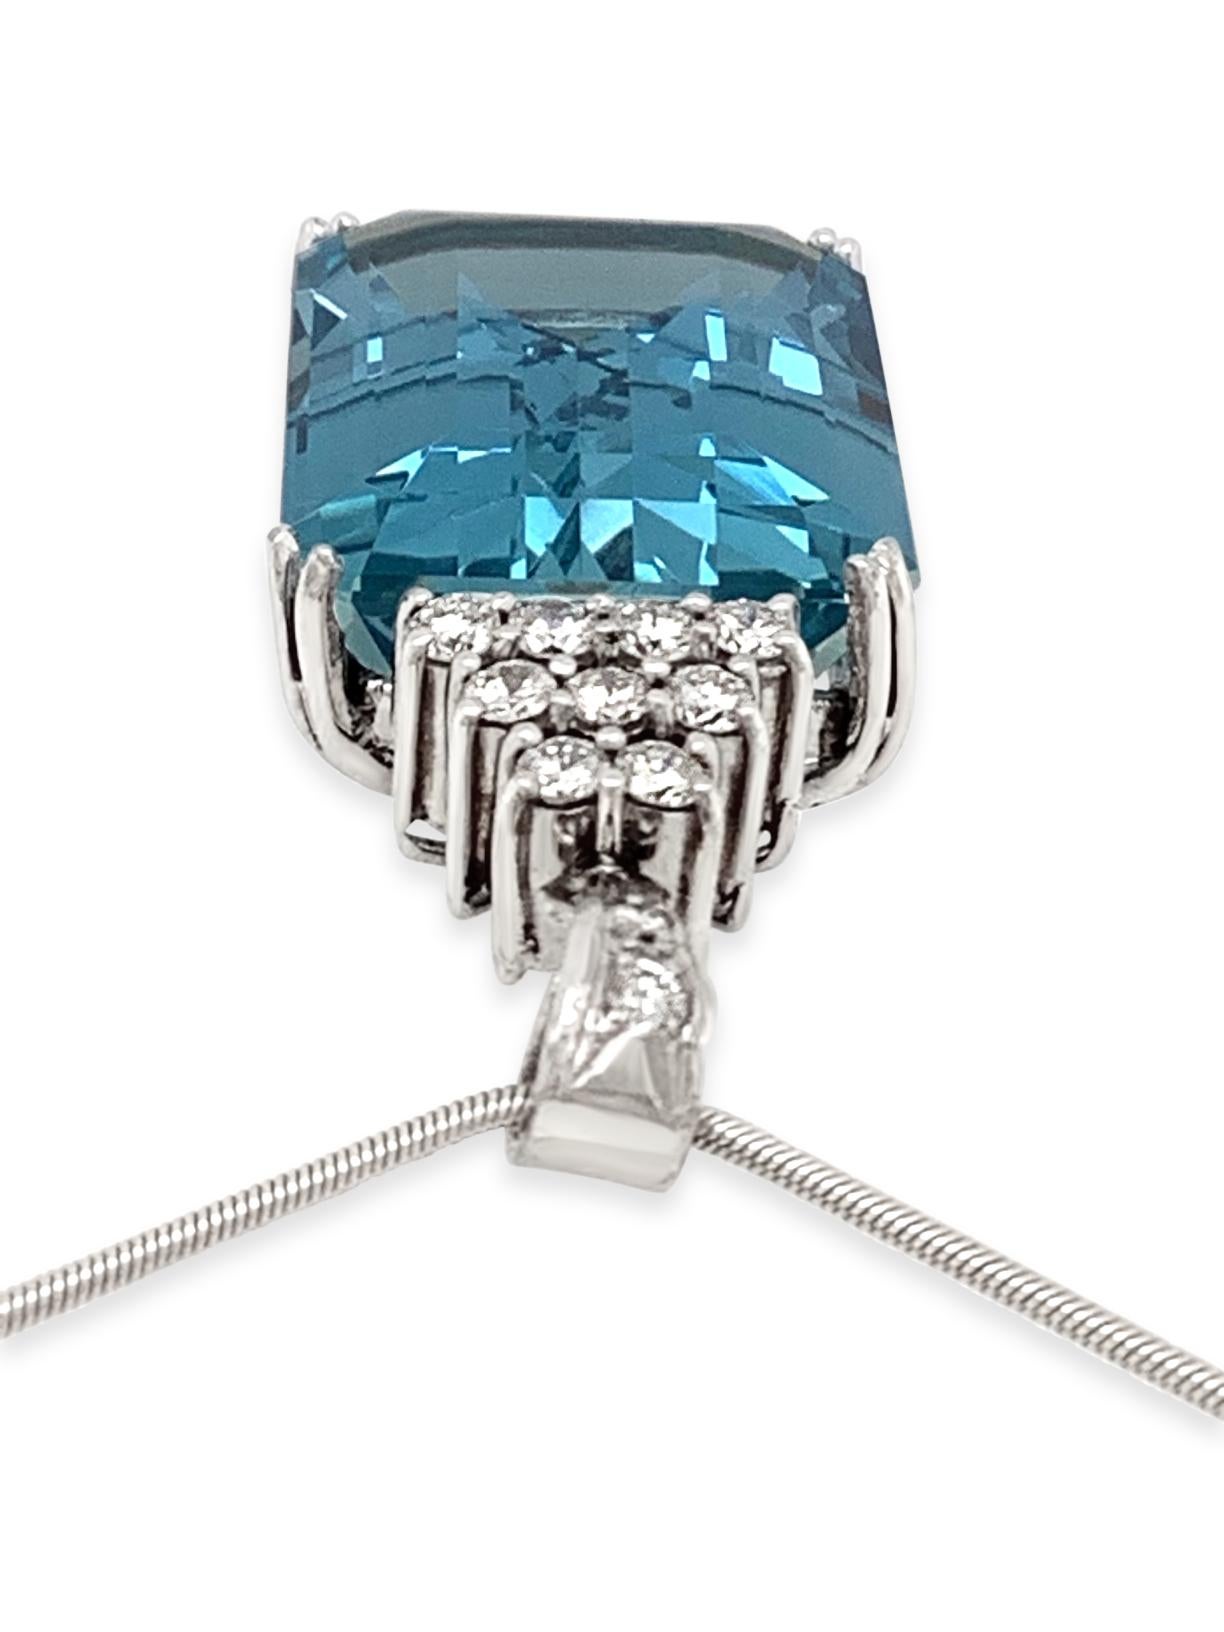 Emerald Cut 1950s 26.29 Carat Aquamarine and Diamond Pendant in Platinum